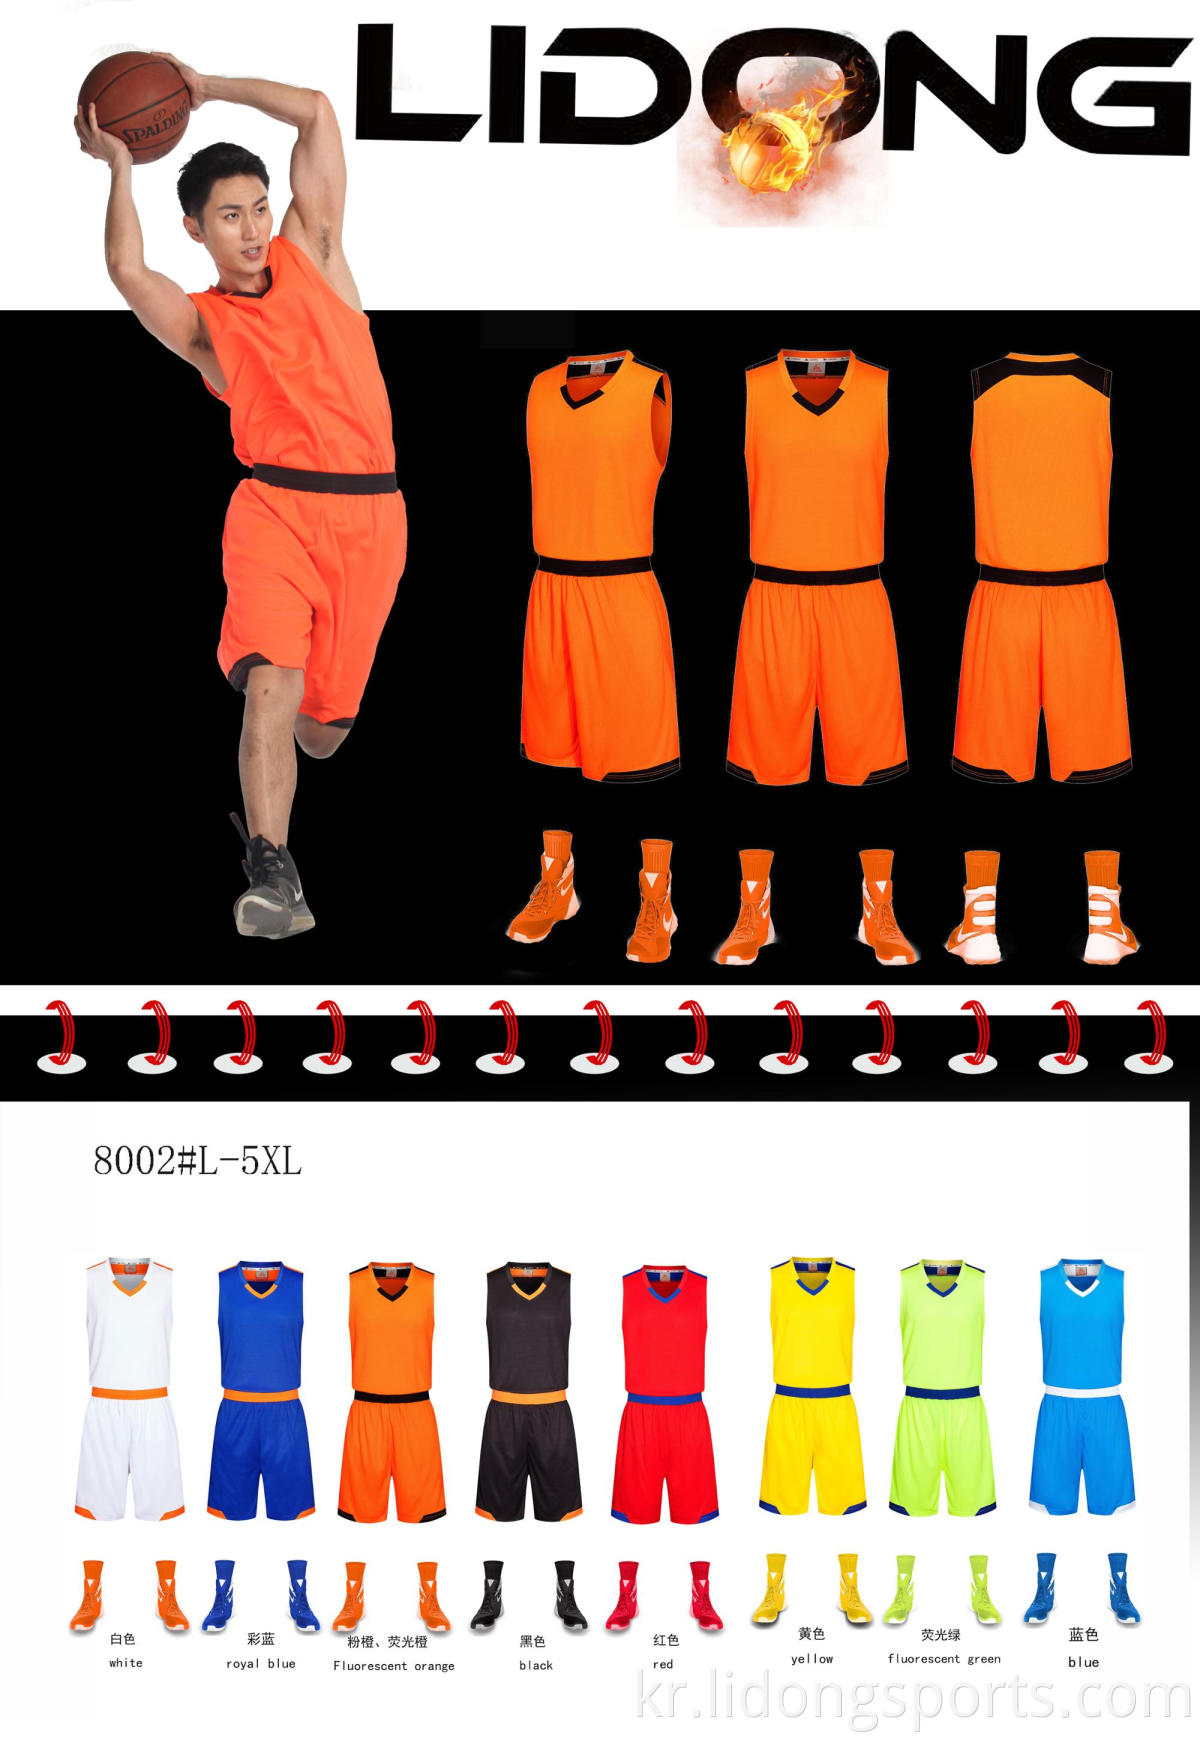 2021 New Style Basketball Jersey 100% 폴리 에스테르 승화 된 블랭크 농구 유니폼 도매